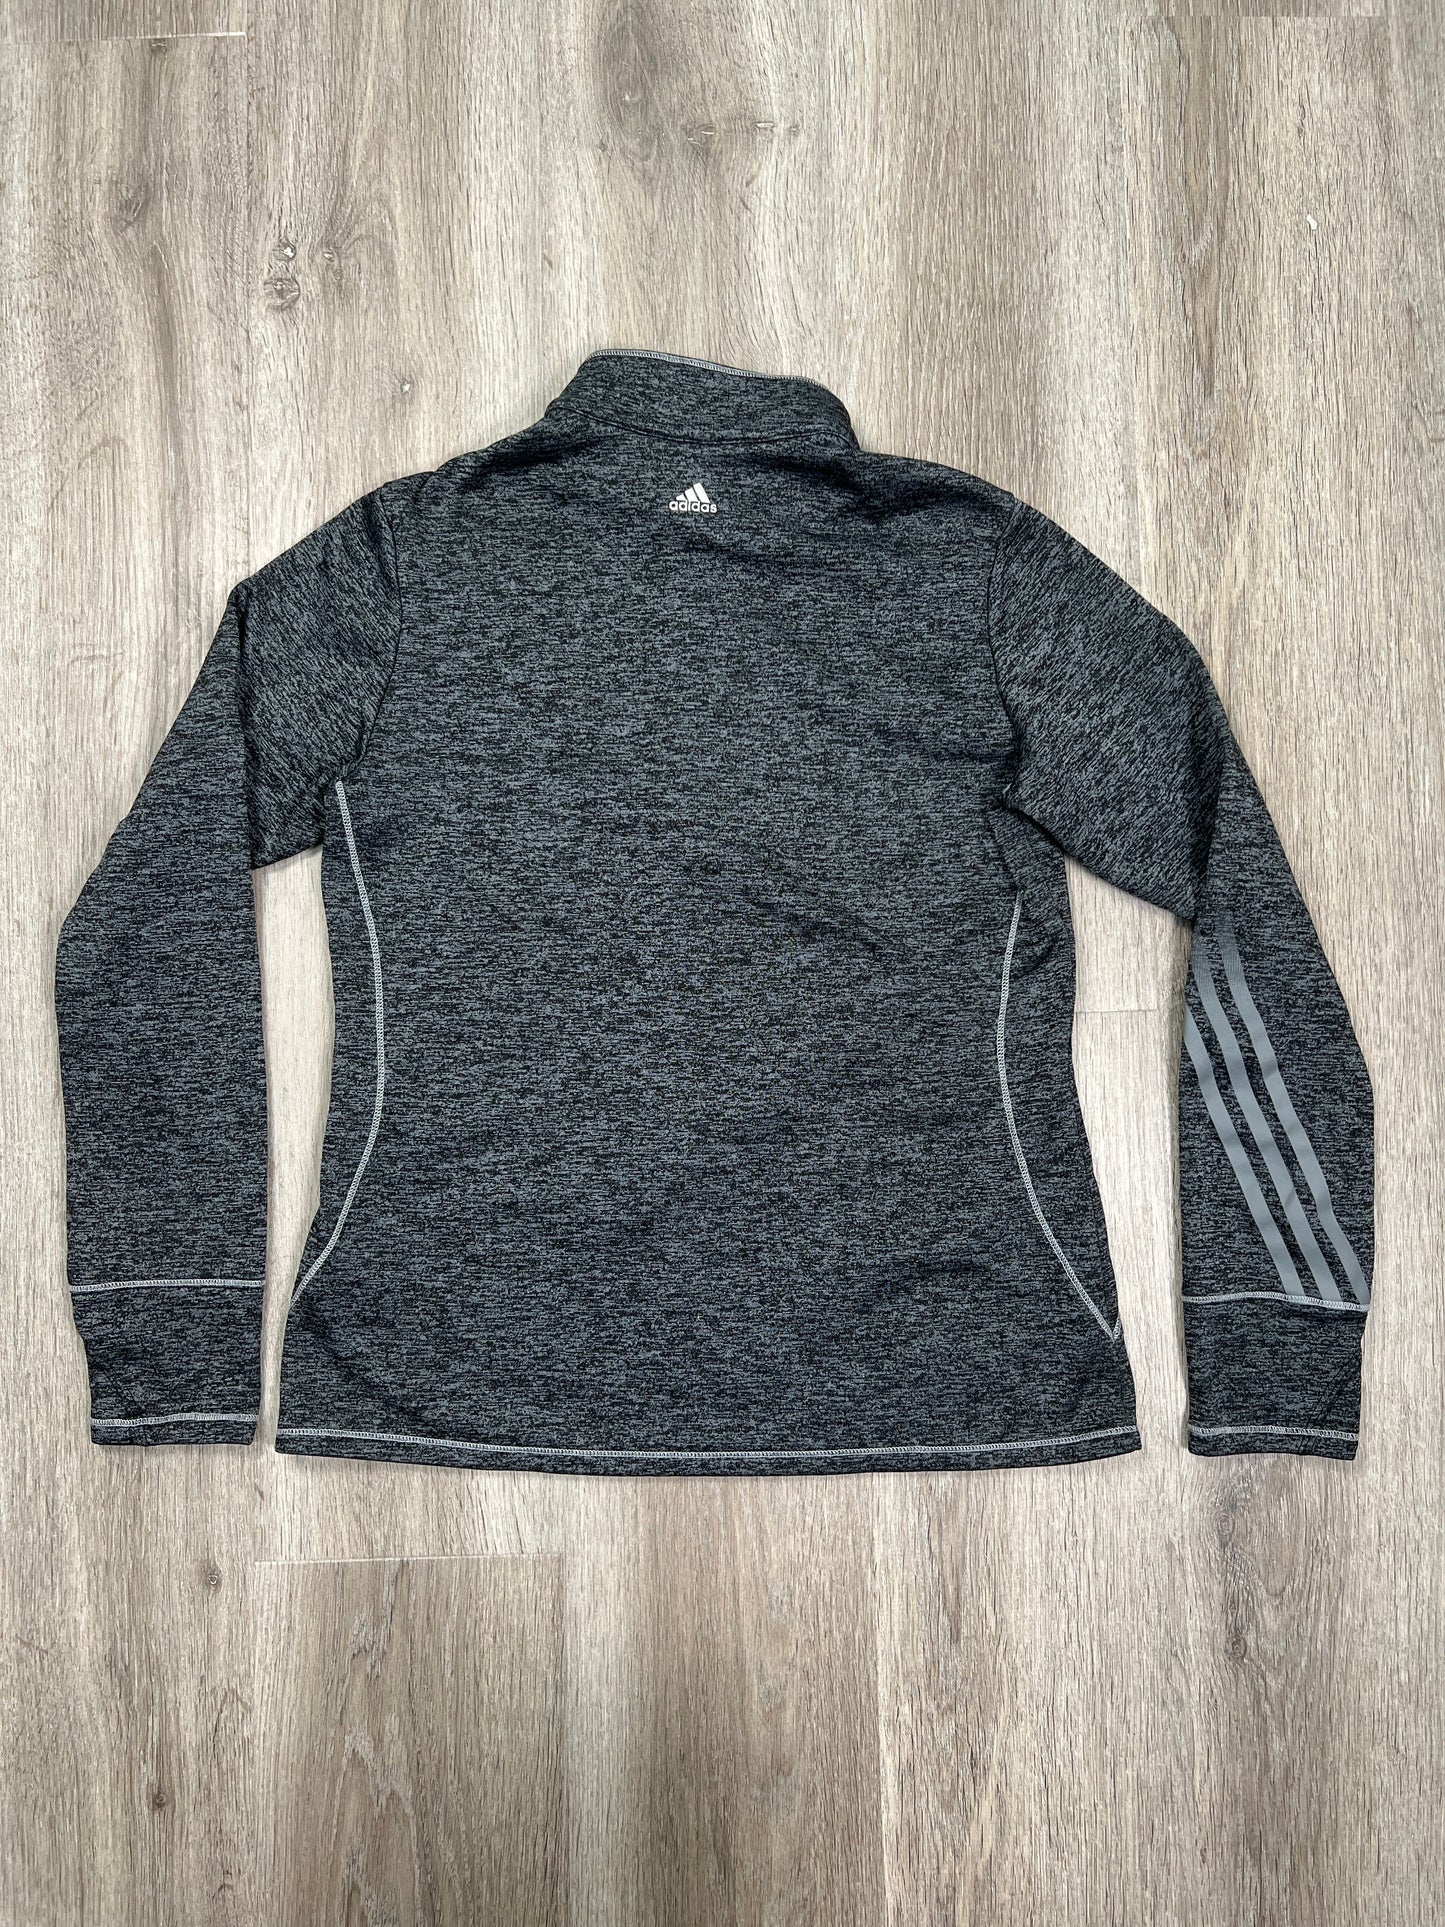 Athletic Sweatshirt Collar By Adidas  Size: M